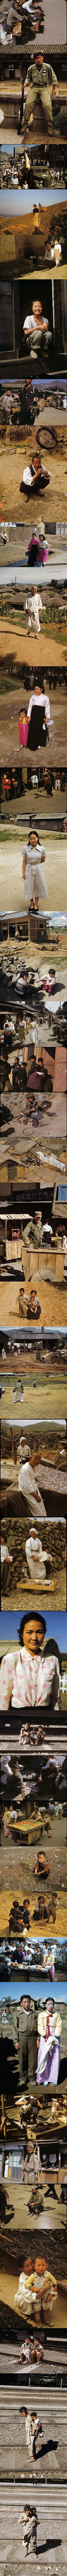 우리나라 1950년대 컬러 사진들